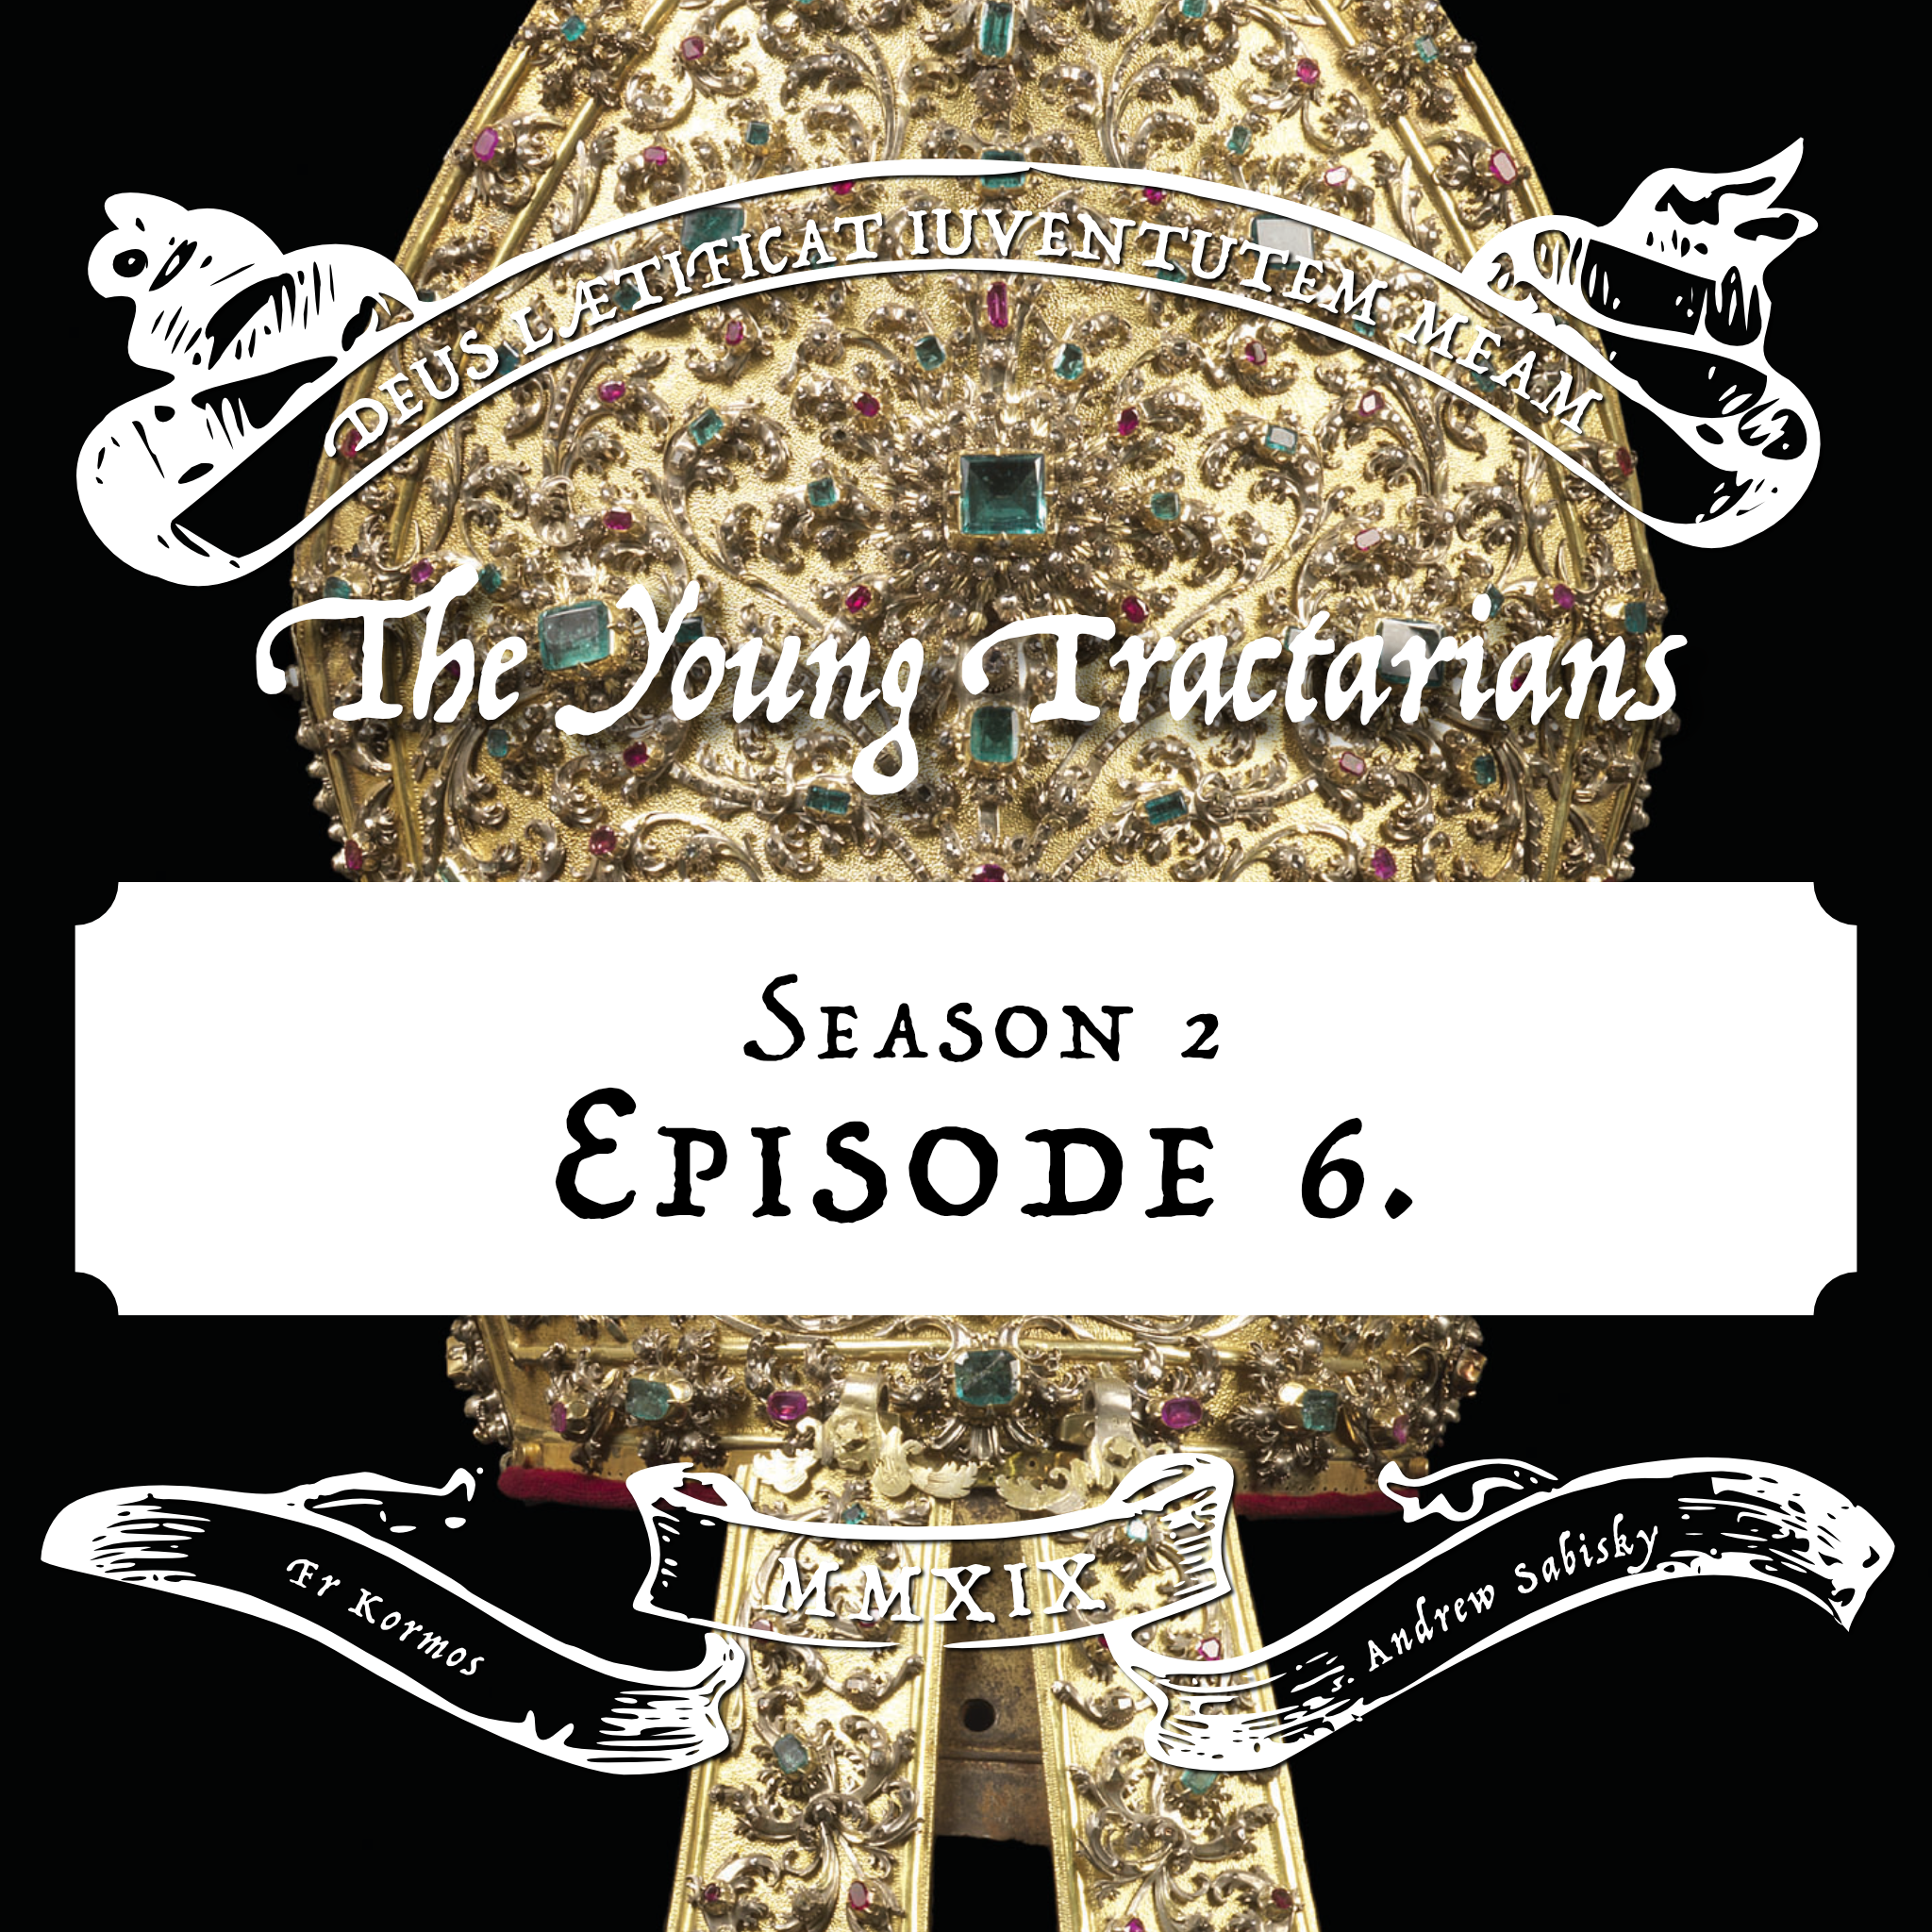 Season 2, Episode 6